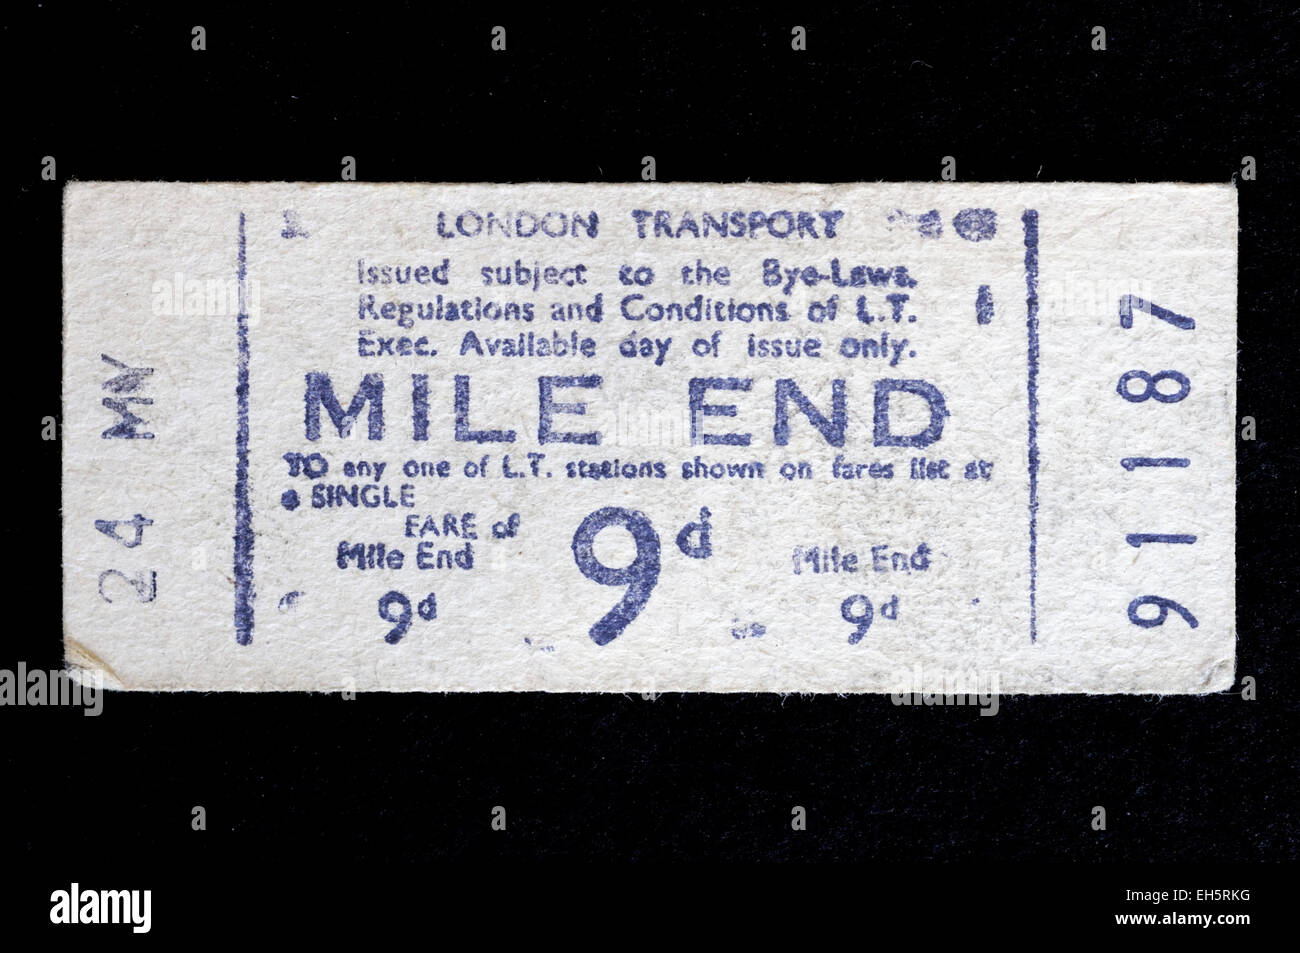 Vecchio usato Londra Trasporti linea metropolitana biglietto acquistato a Mile End Station e un costo di 9d - nove vecchi pence o spiccioli Inghilterra Brita Foto Stock